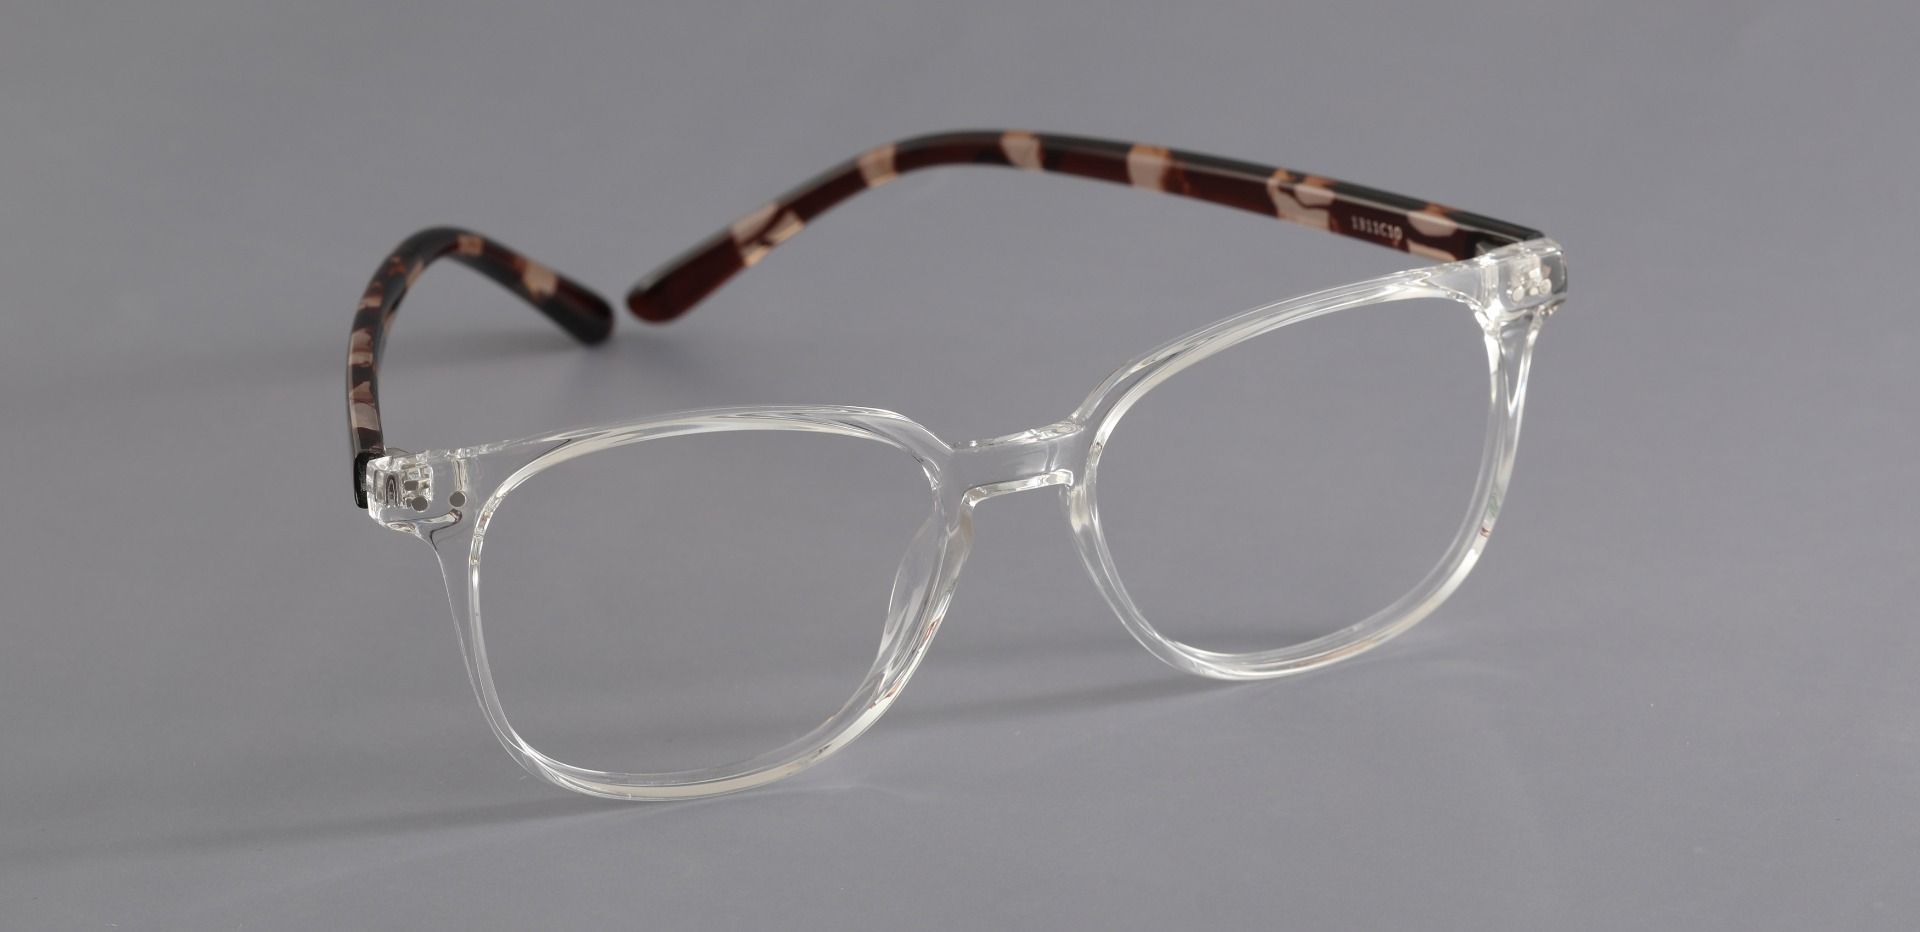 Ravine Square Prescription Glasses - Clear